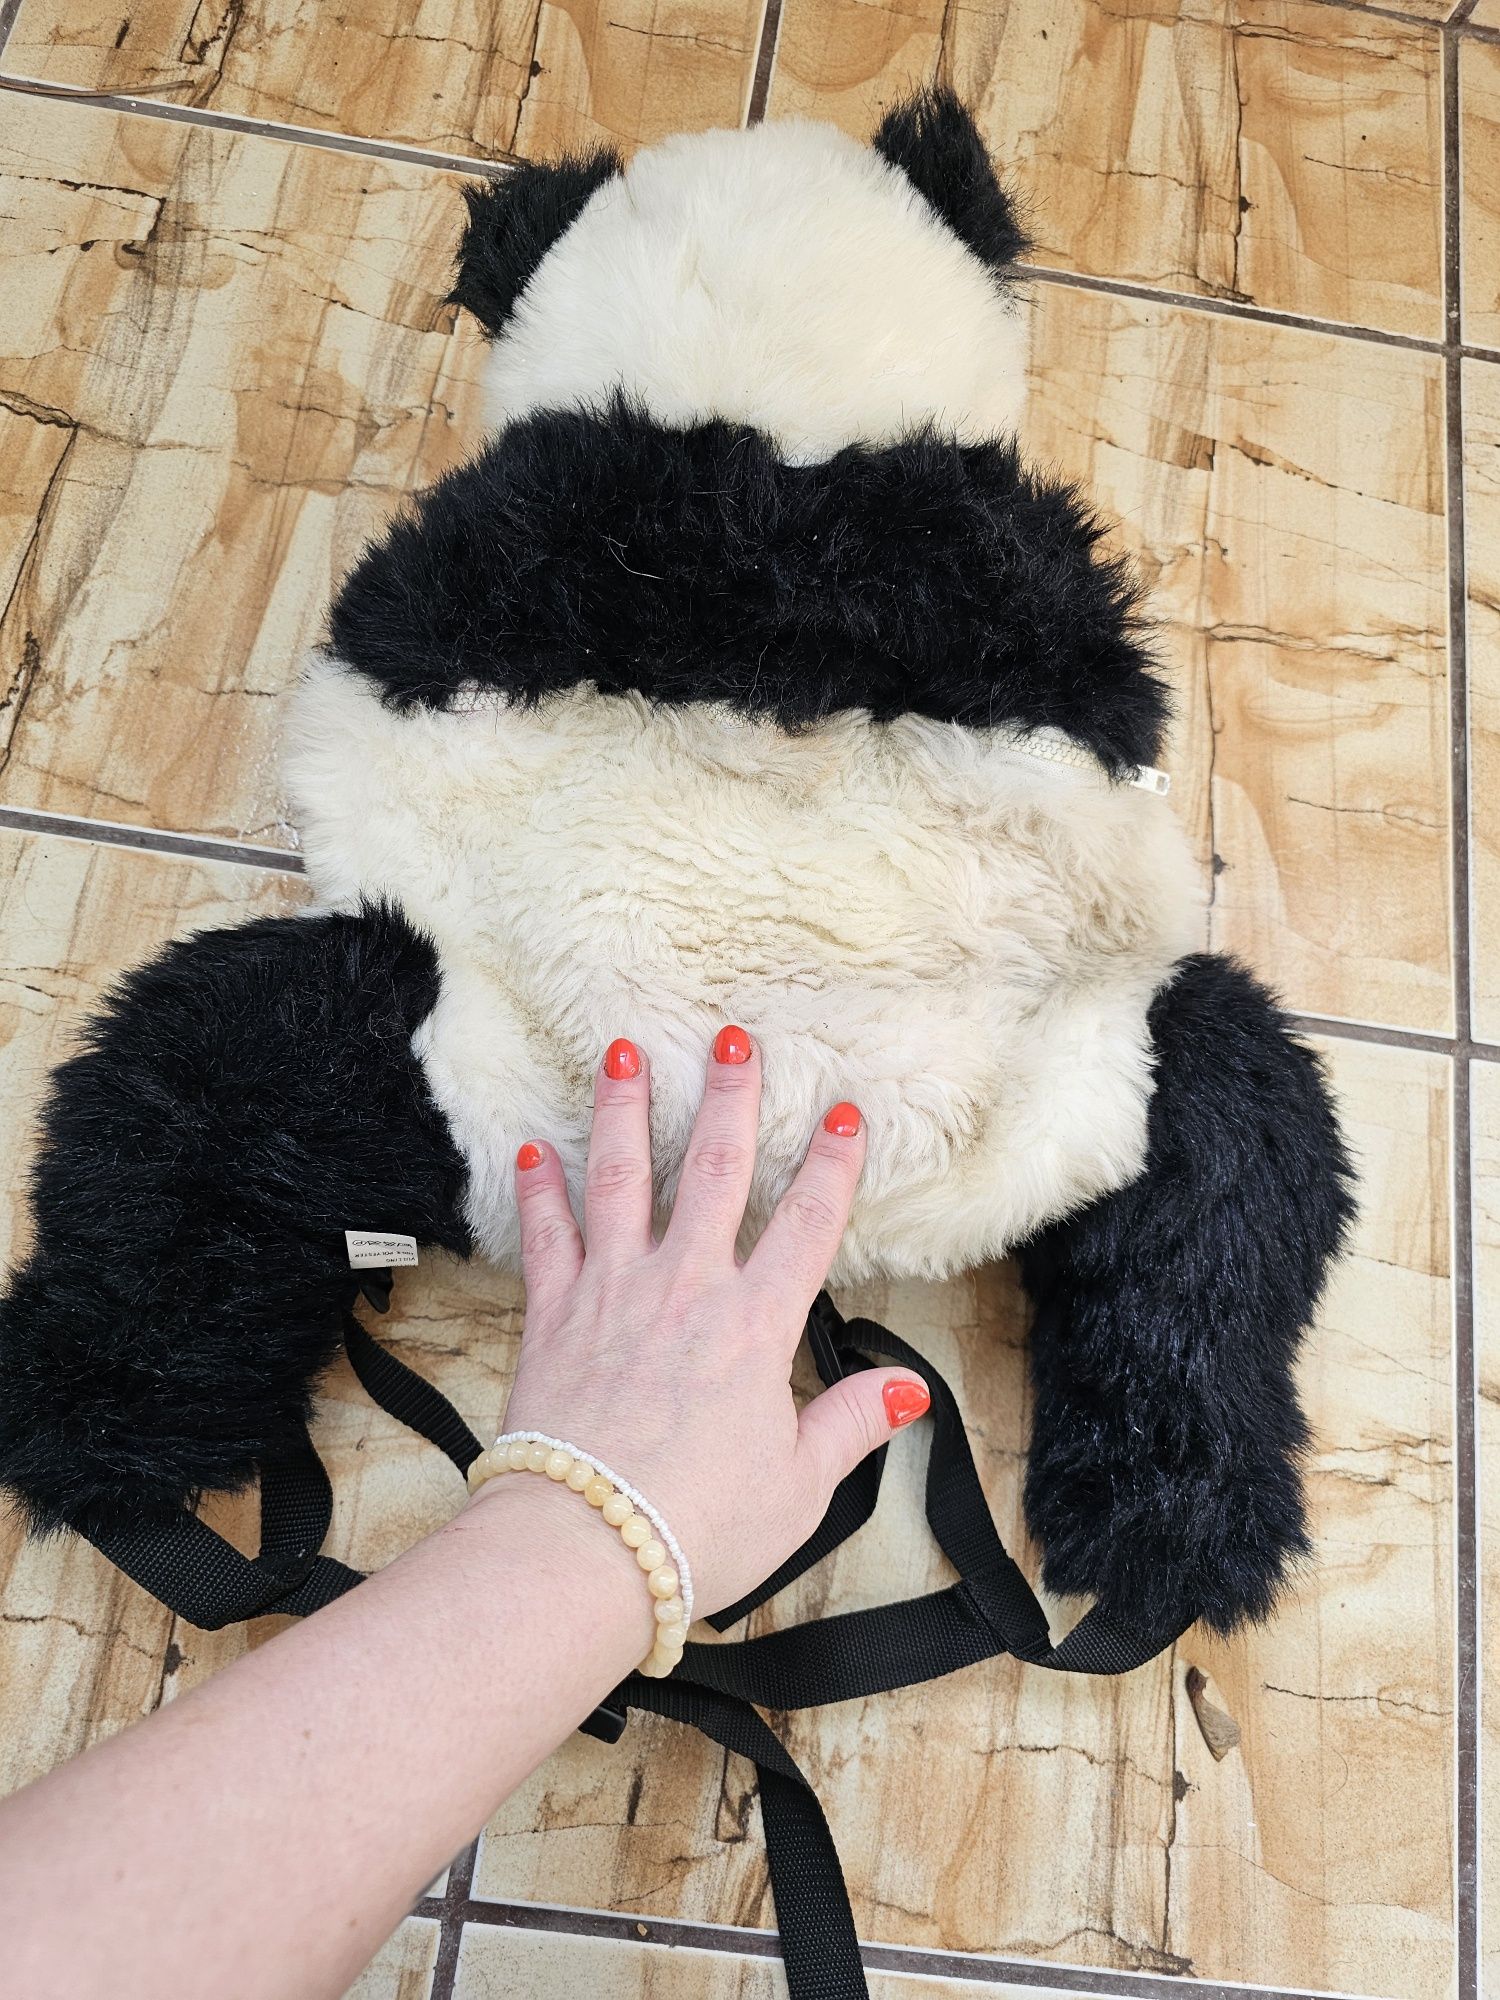 Rucsac urs panda